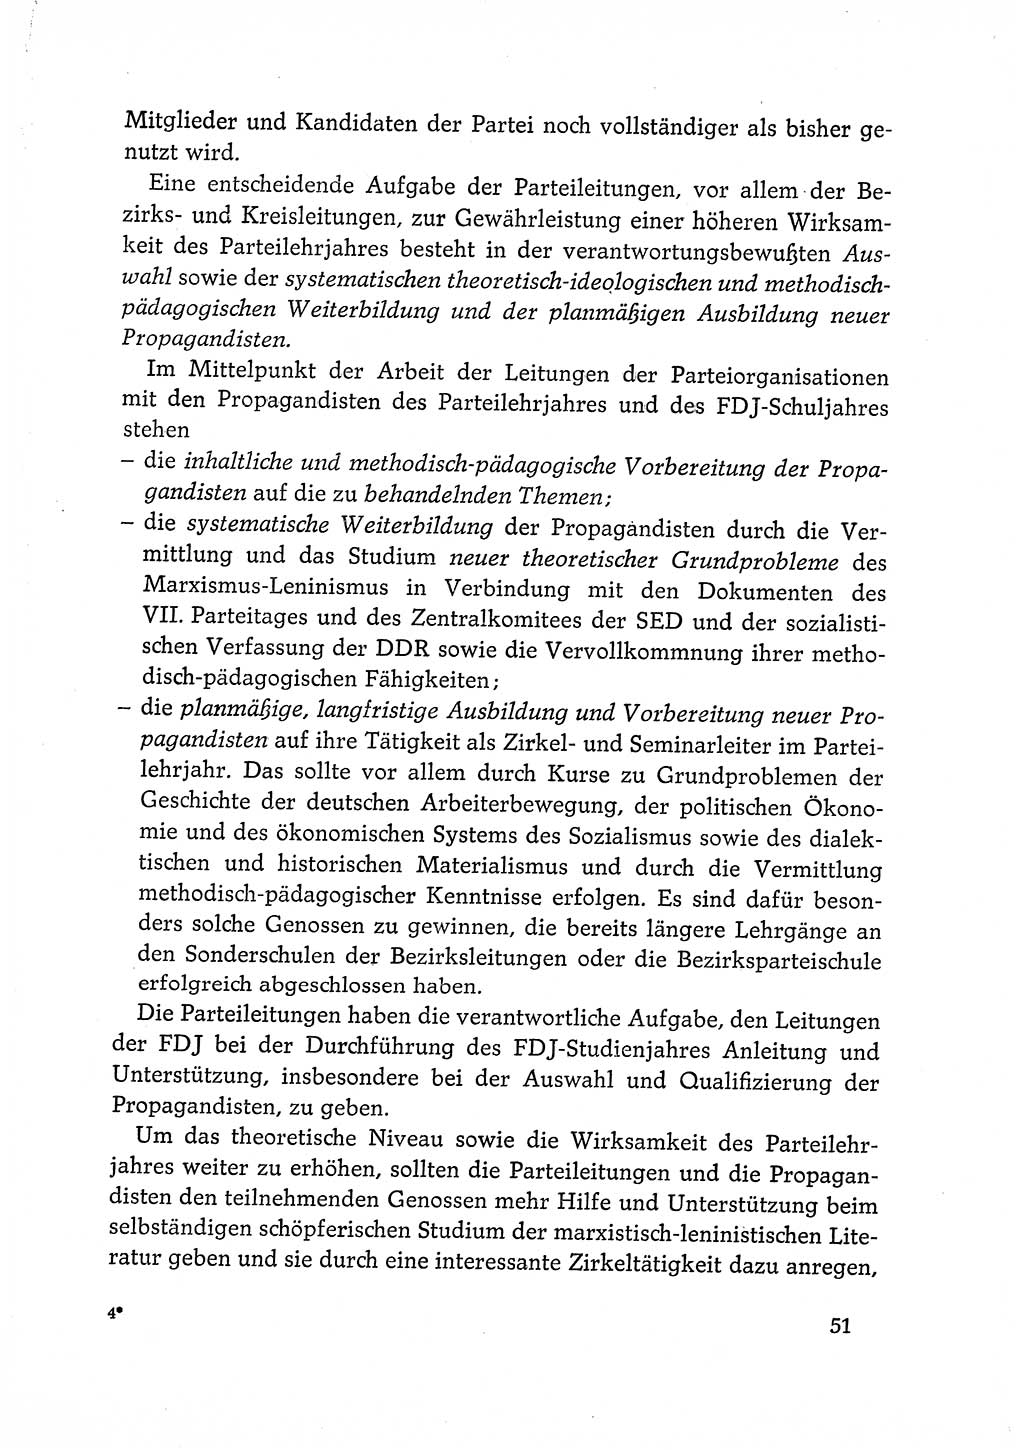 Dokumente der Sozialistischen Einheitspartei Deutschlands (SED) [Deutsche Demokratische Republik (DDR)] 1968-1969, Seite 51 (Dok. SED DDR 1968-1969, S. 51)